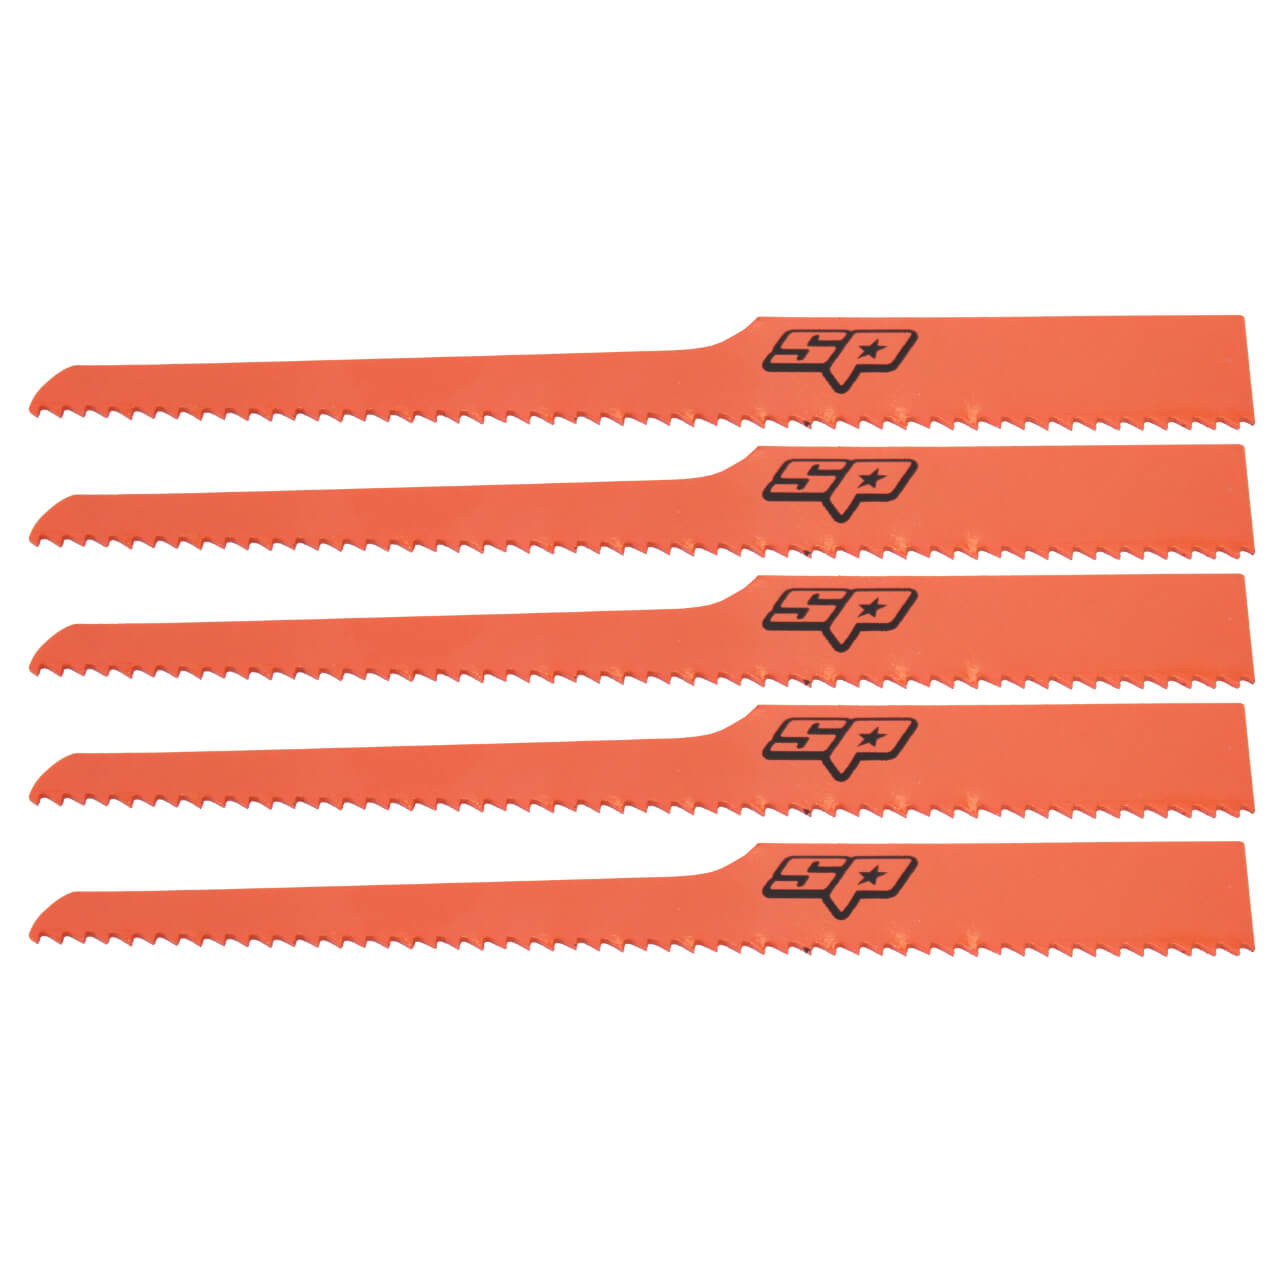 SP Tools 5pce 24 Teeth Air Hacksaw Blades